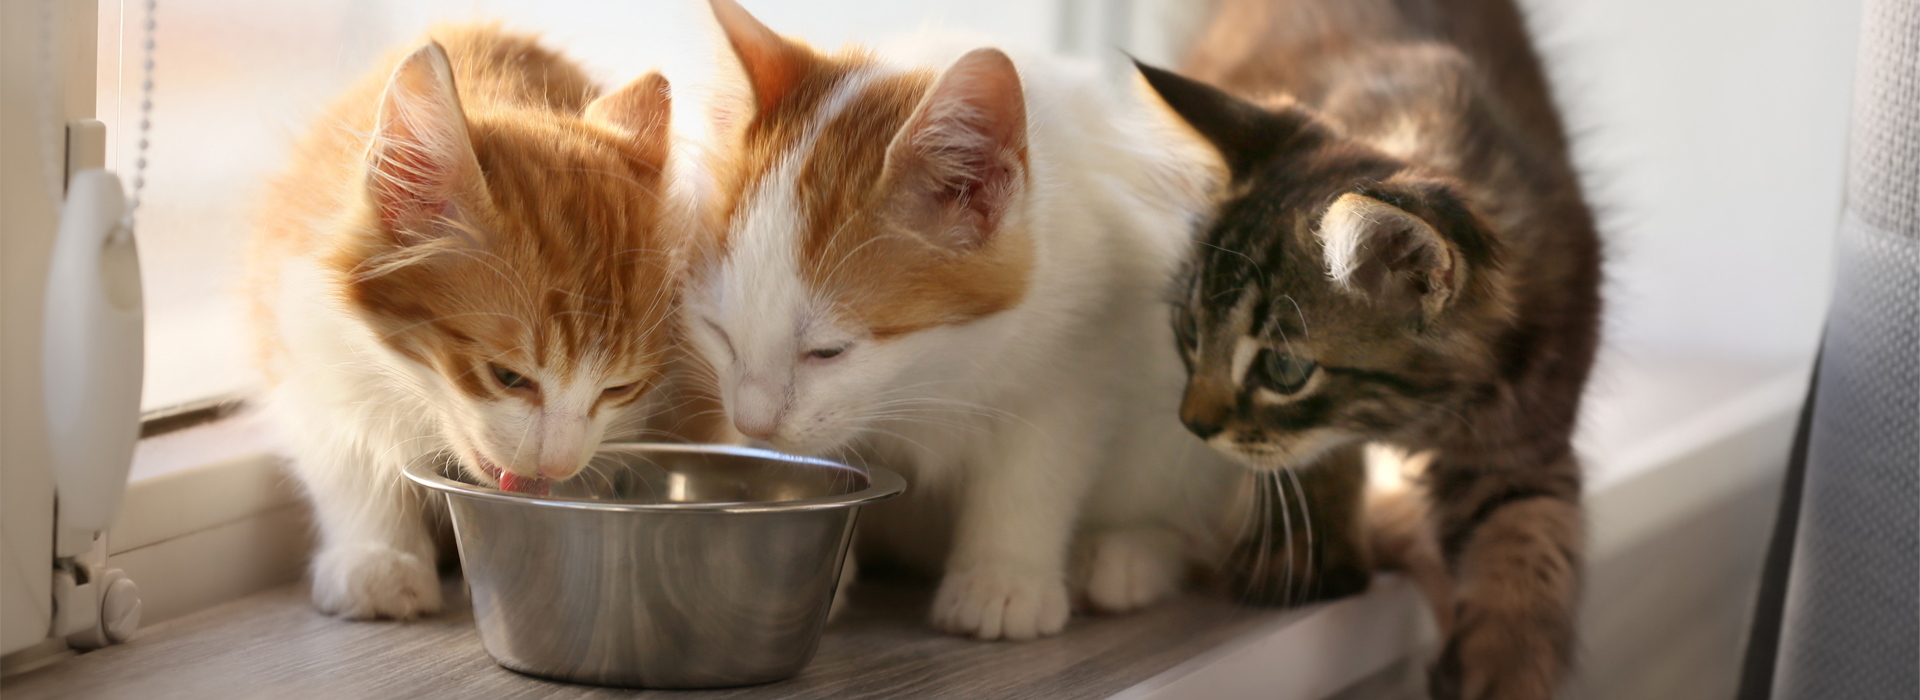 Pâtée pour chaton : une aide précieuse pour le sevrage du chaton